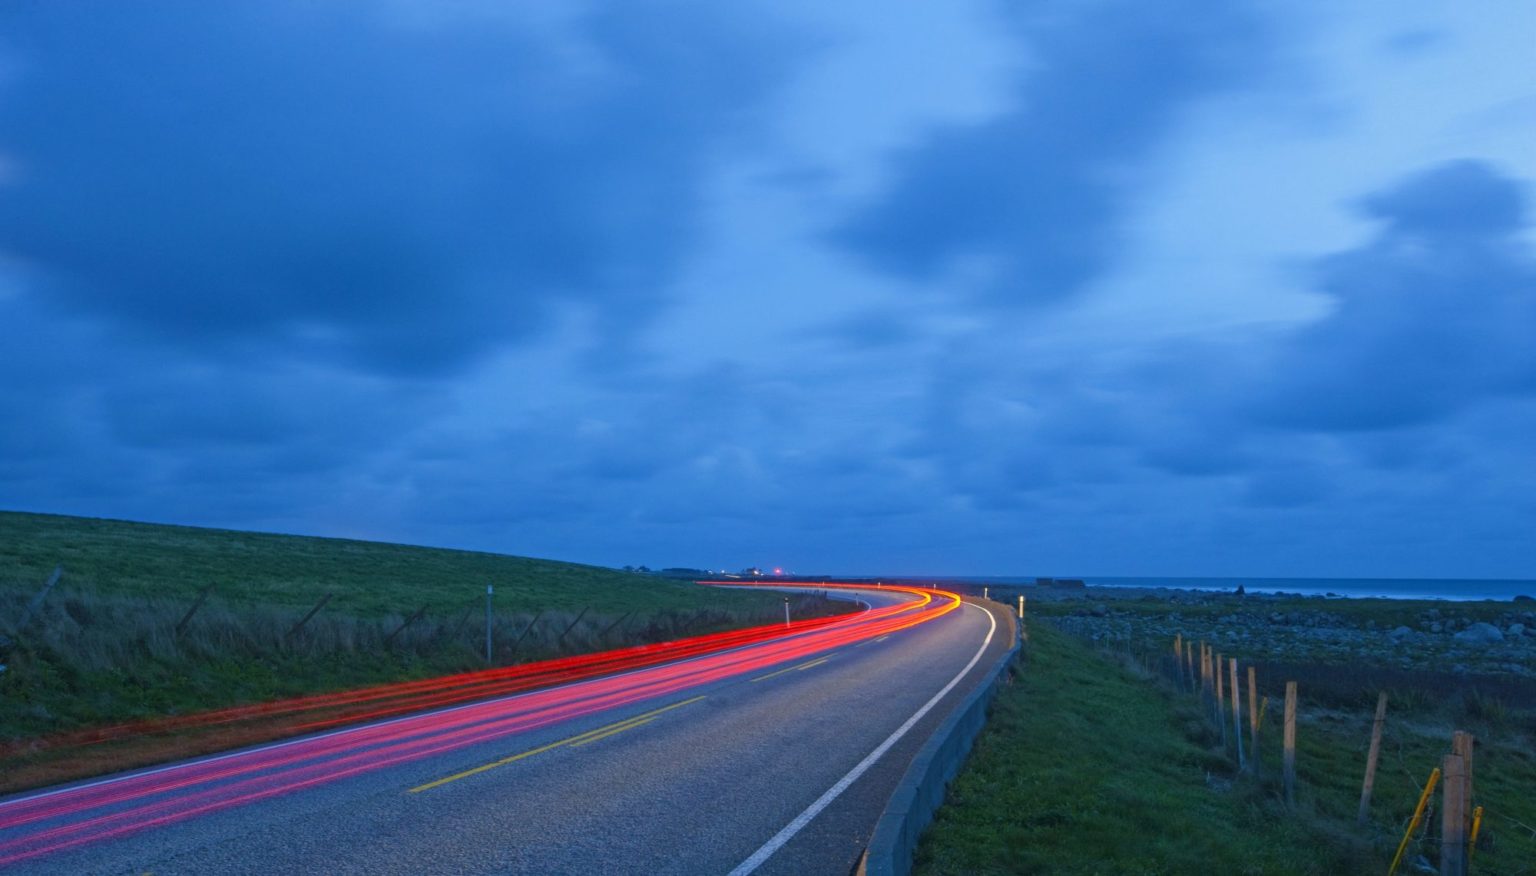 Lysstripe (lang lukkertid på kamera) langs riksvei nær kyst med mørkeblå himmel i bakgrunnen.